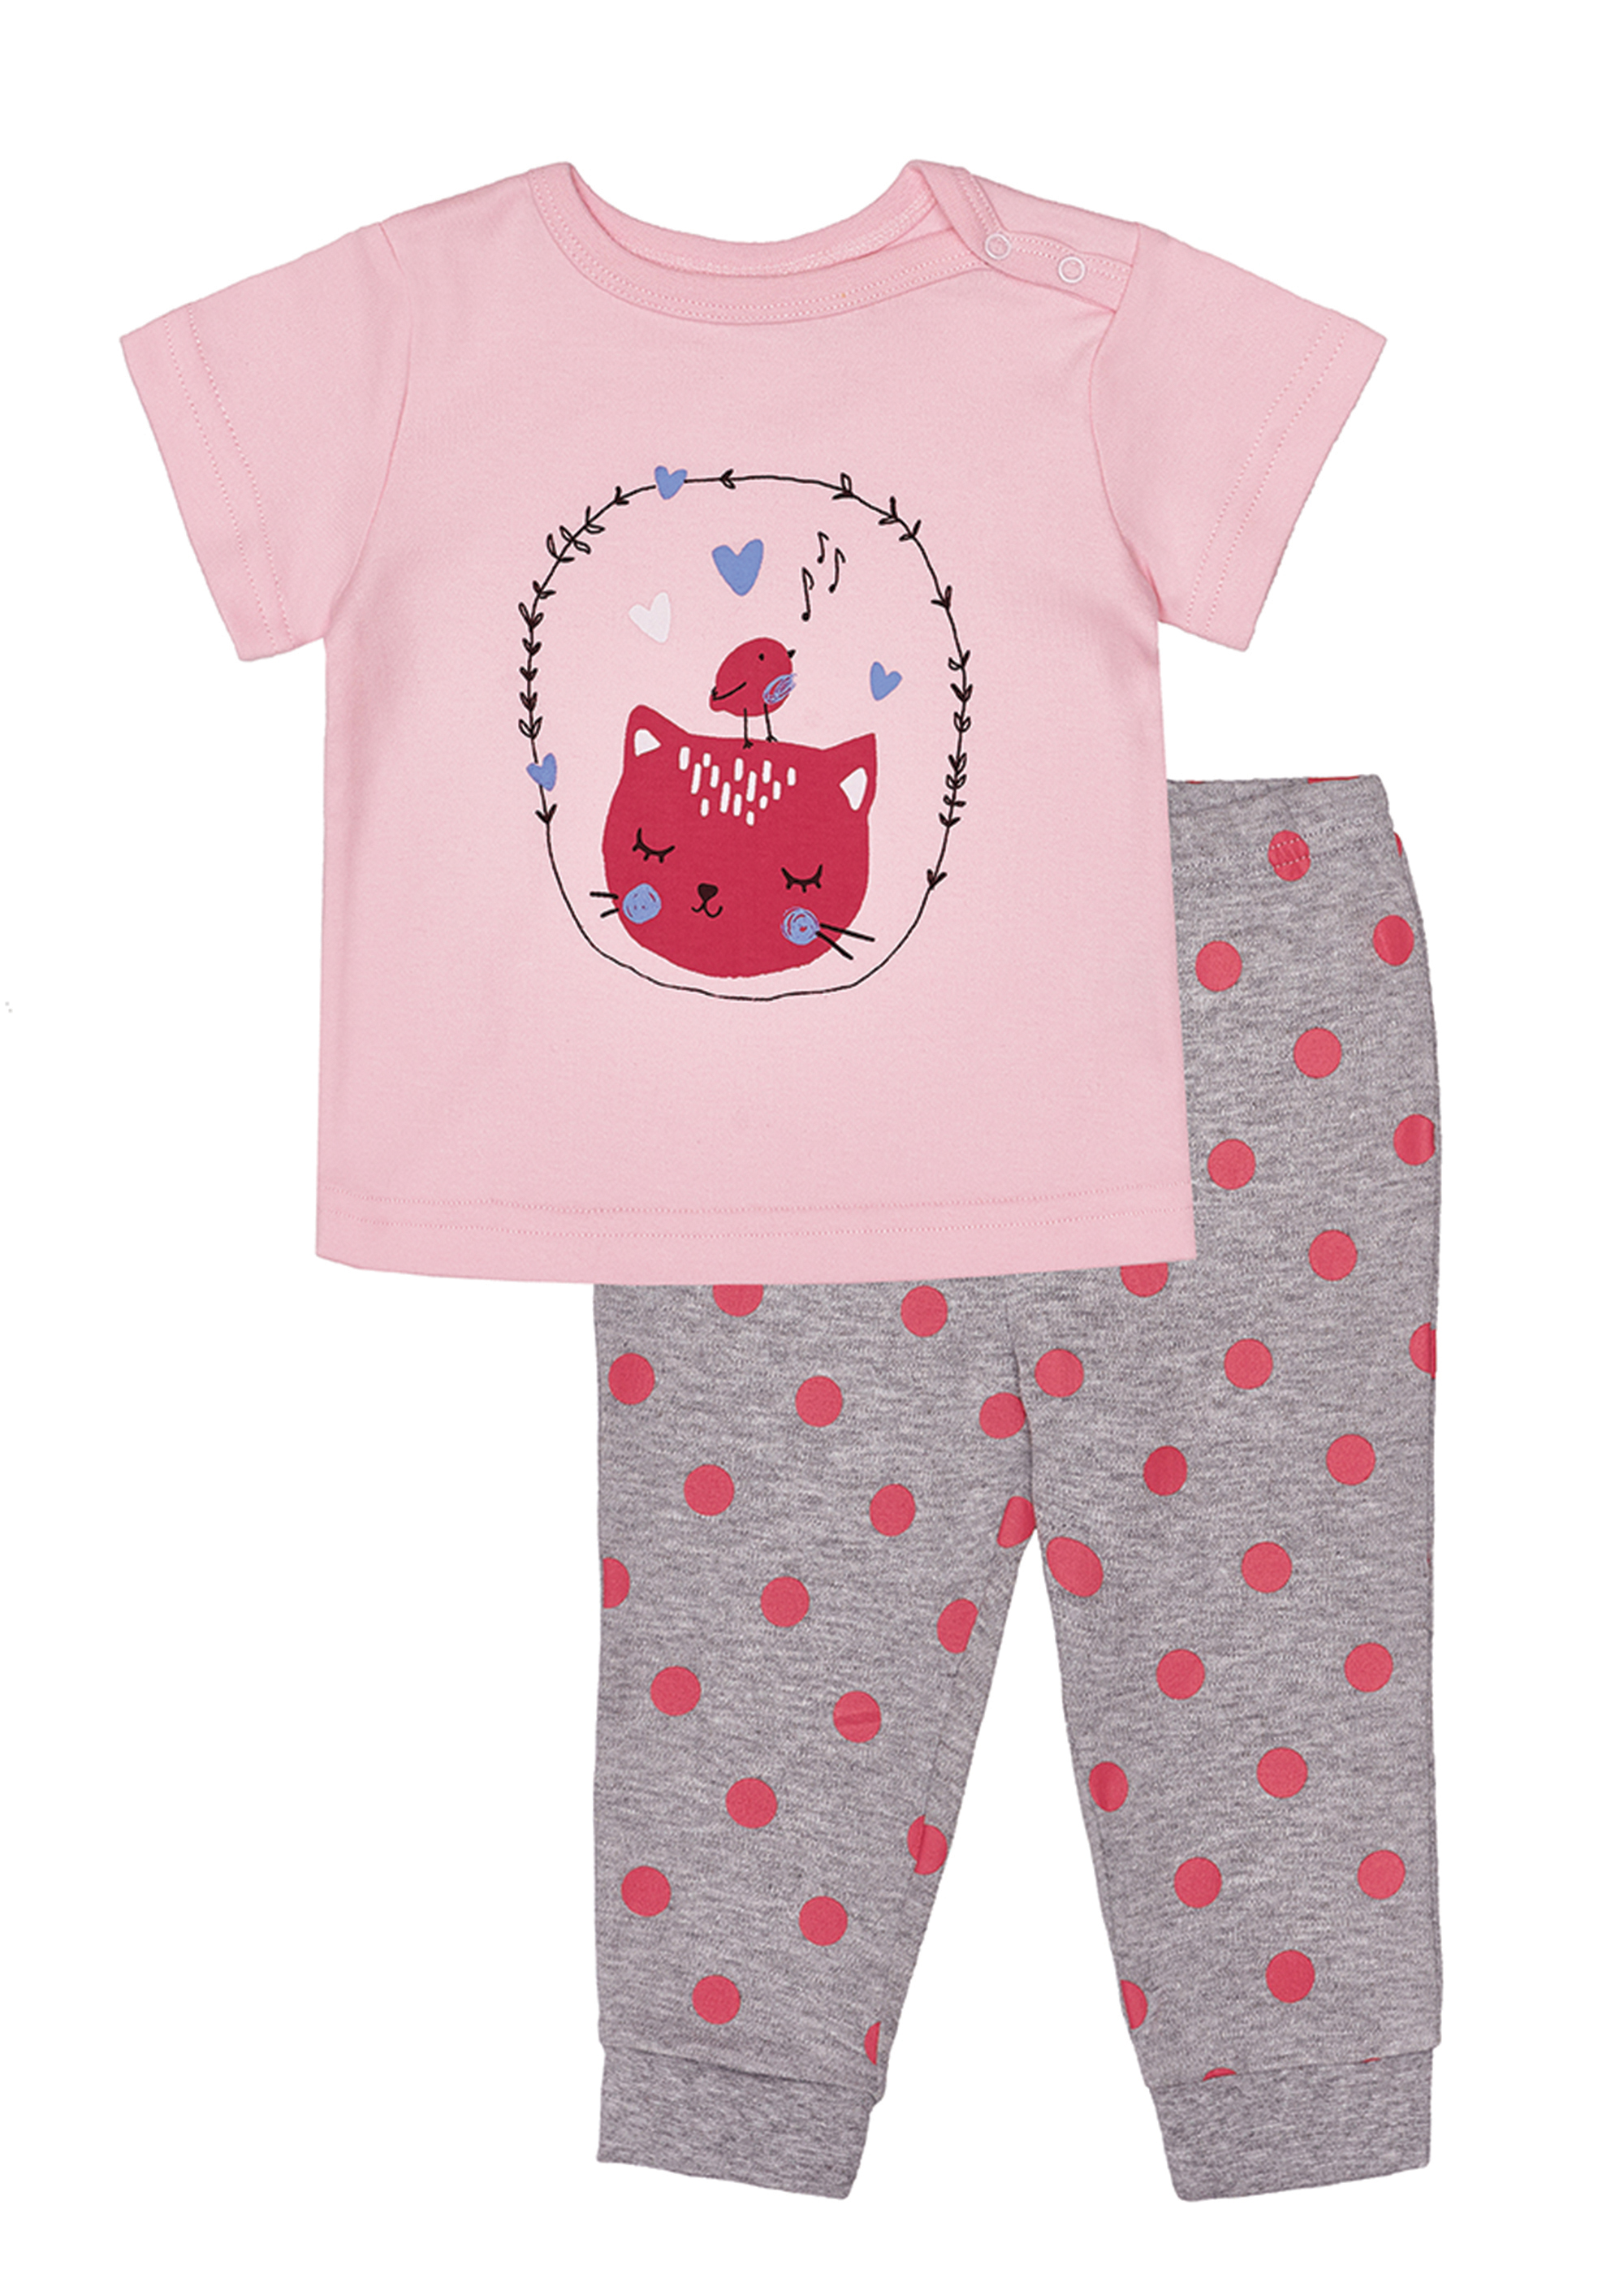 Dívčí pyžamo - Winkiki WNG 91307, růžová Barva: Růžová, Velikost: 92